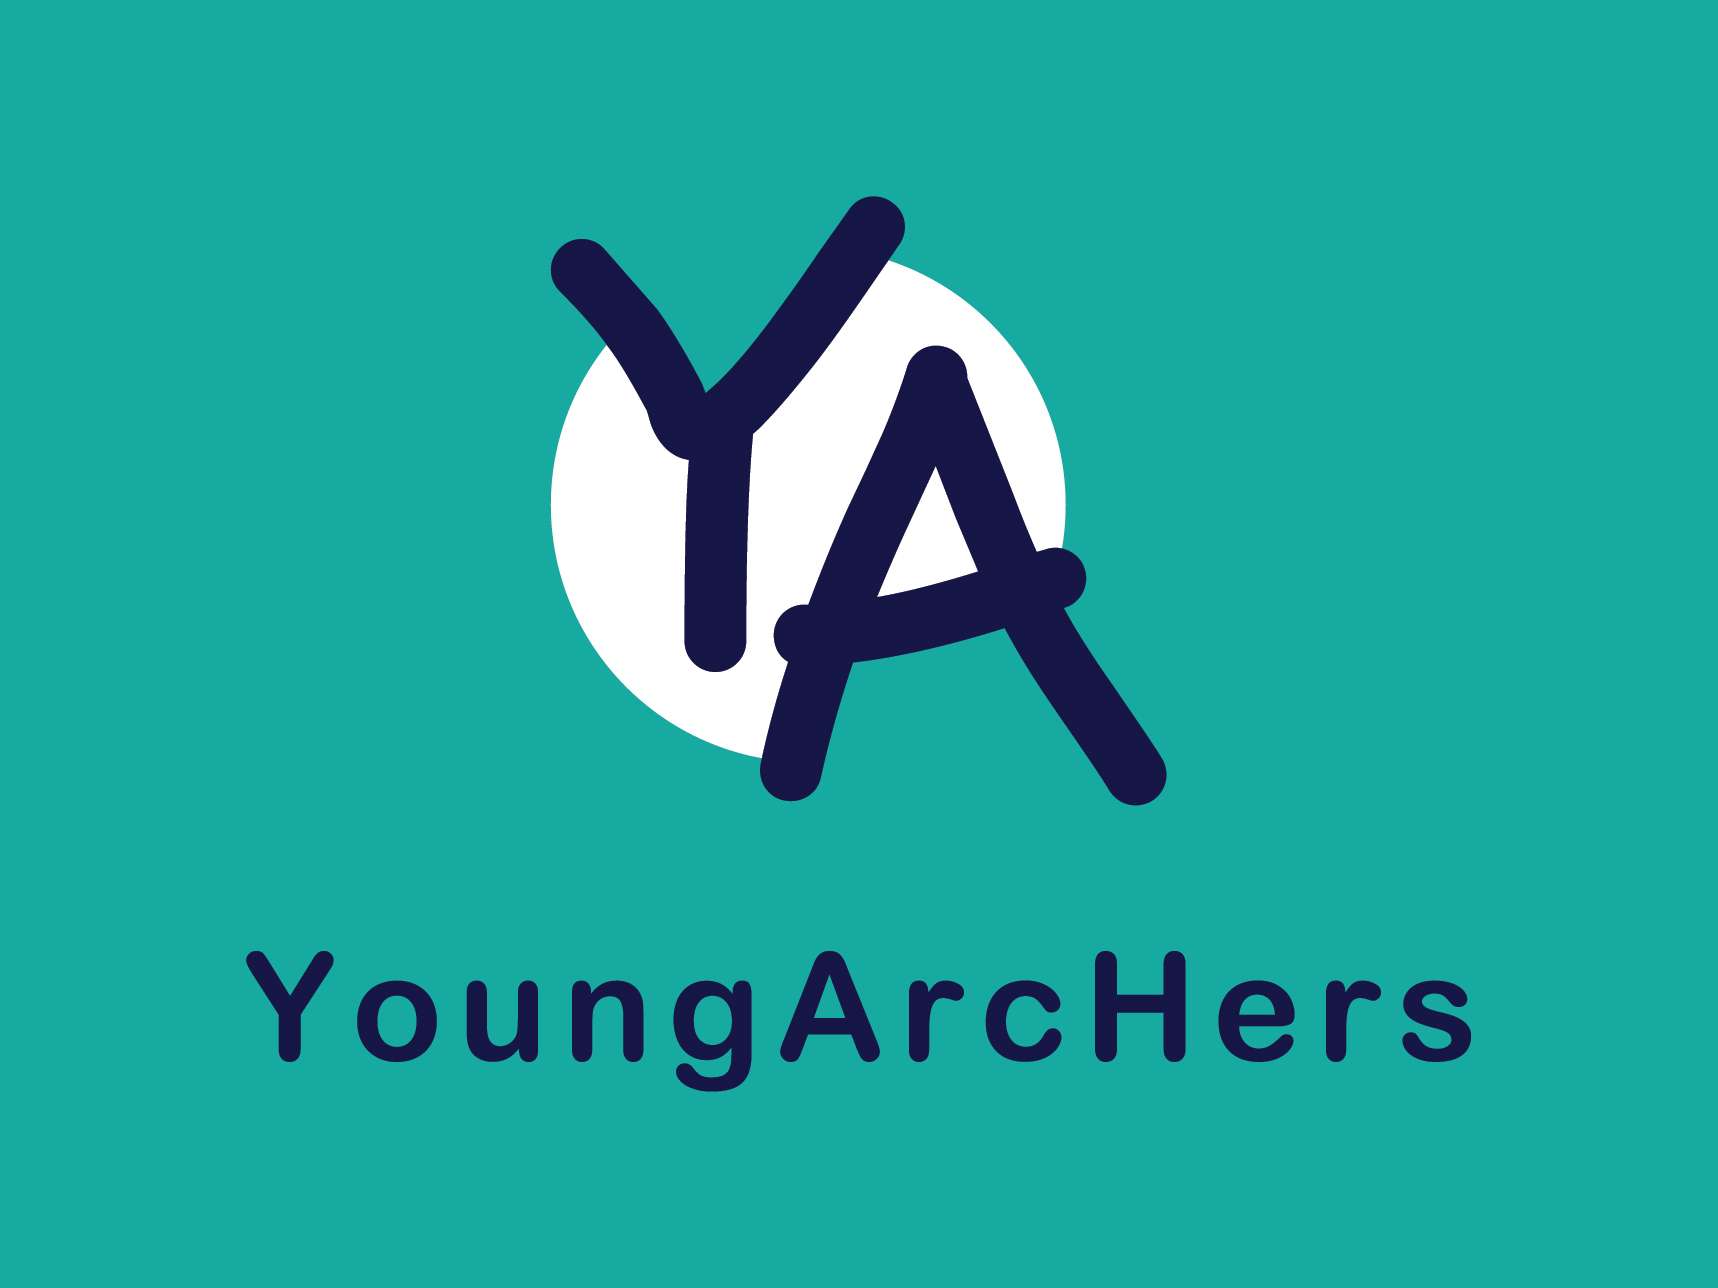 Program YoungArcHers